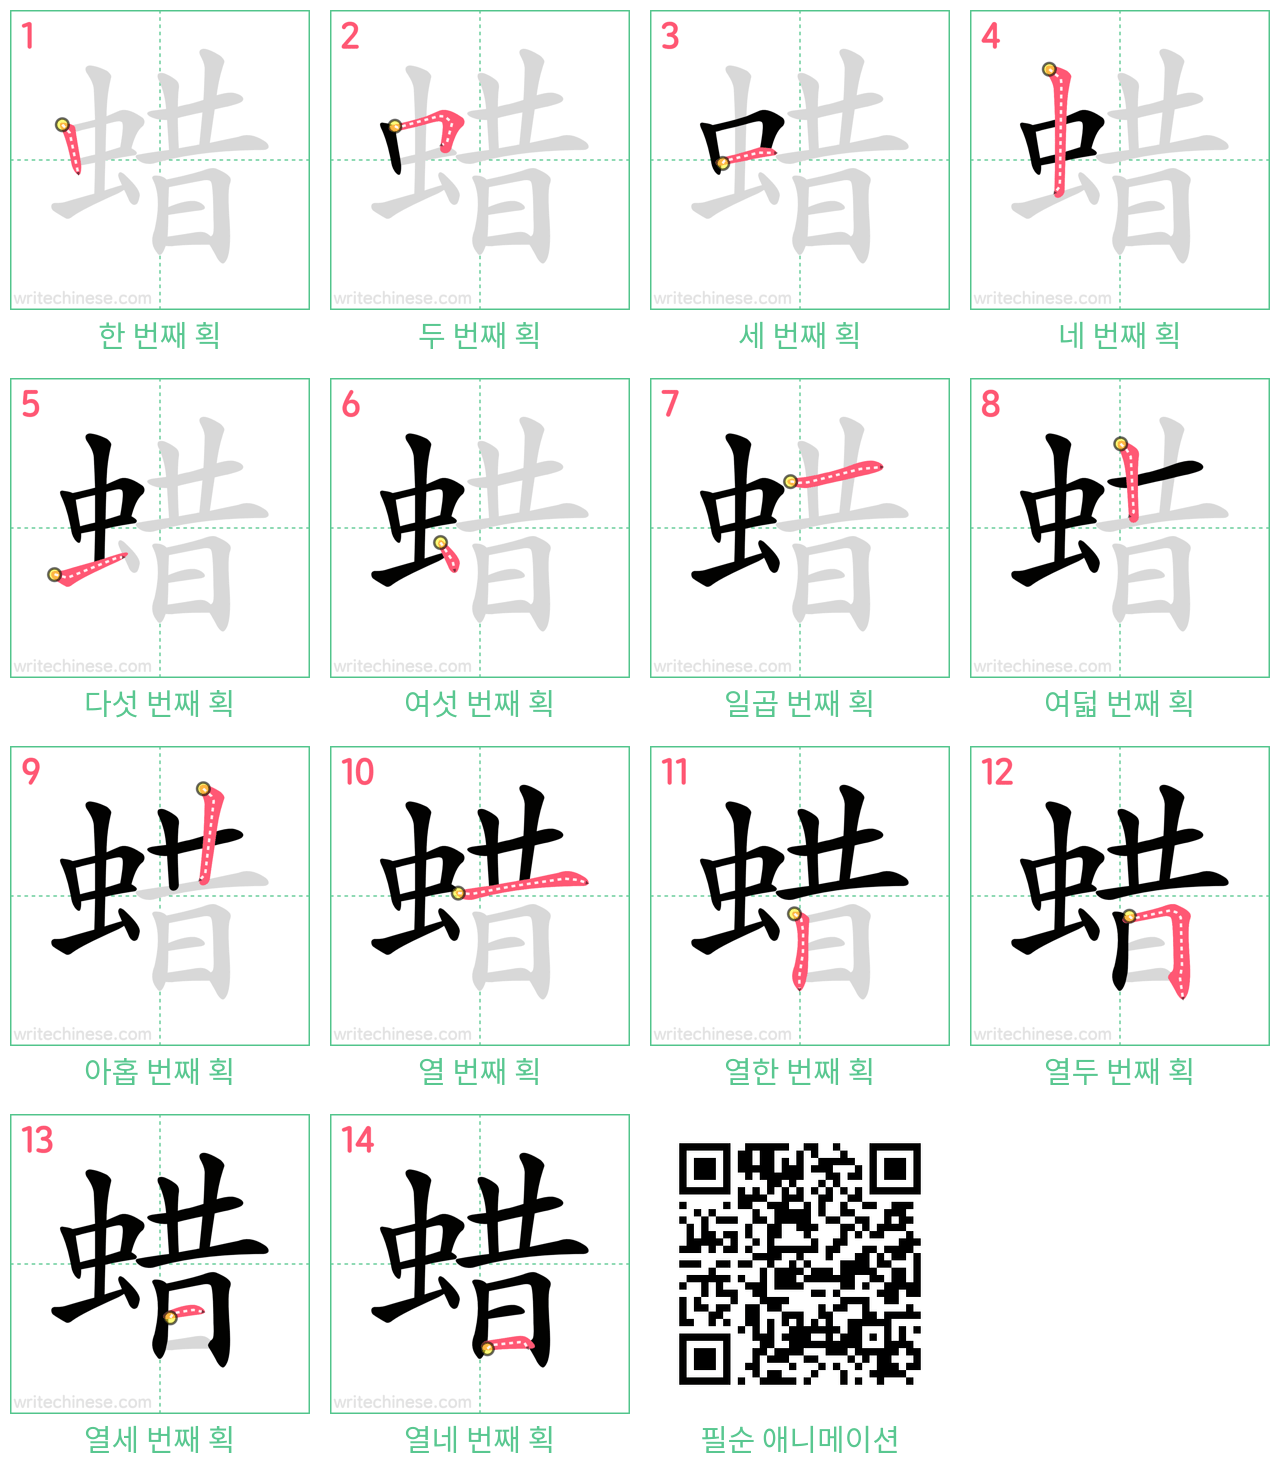 蜡 step-by-step stroke order diagrams